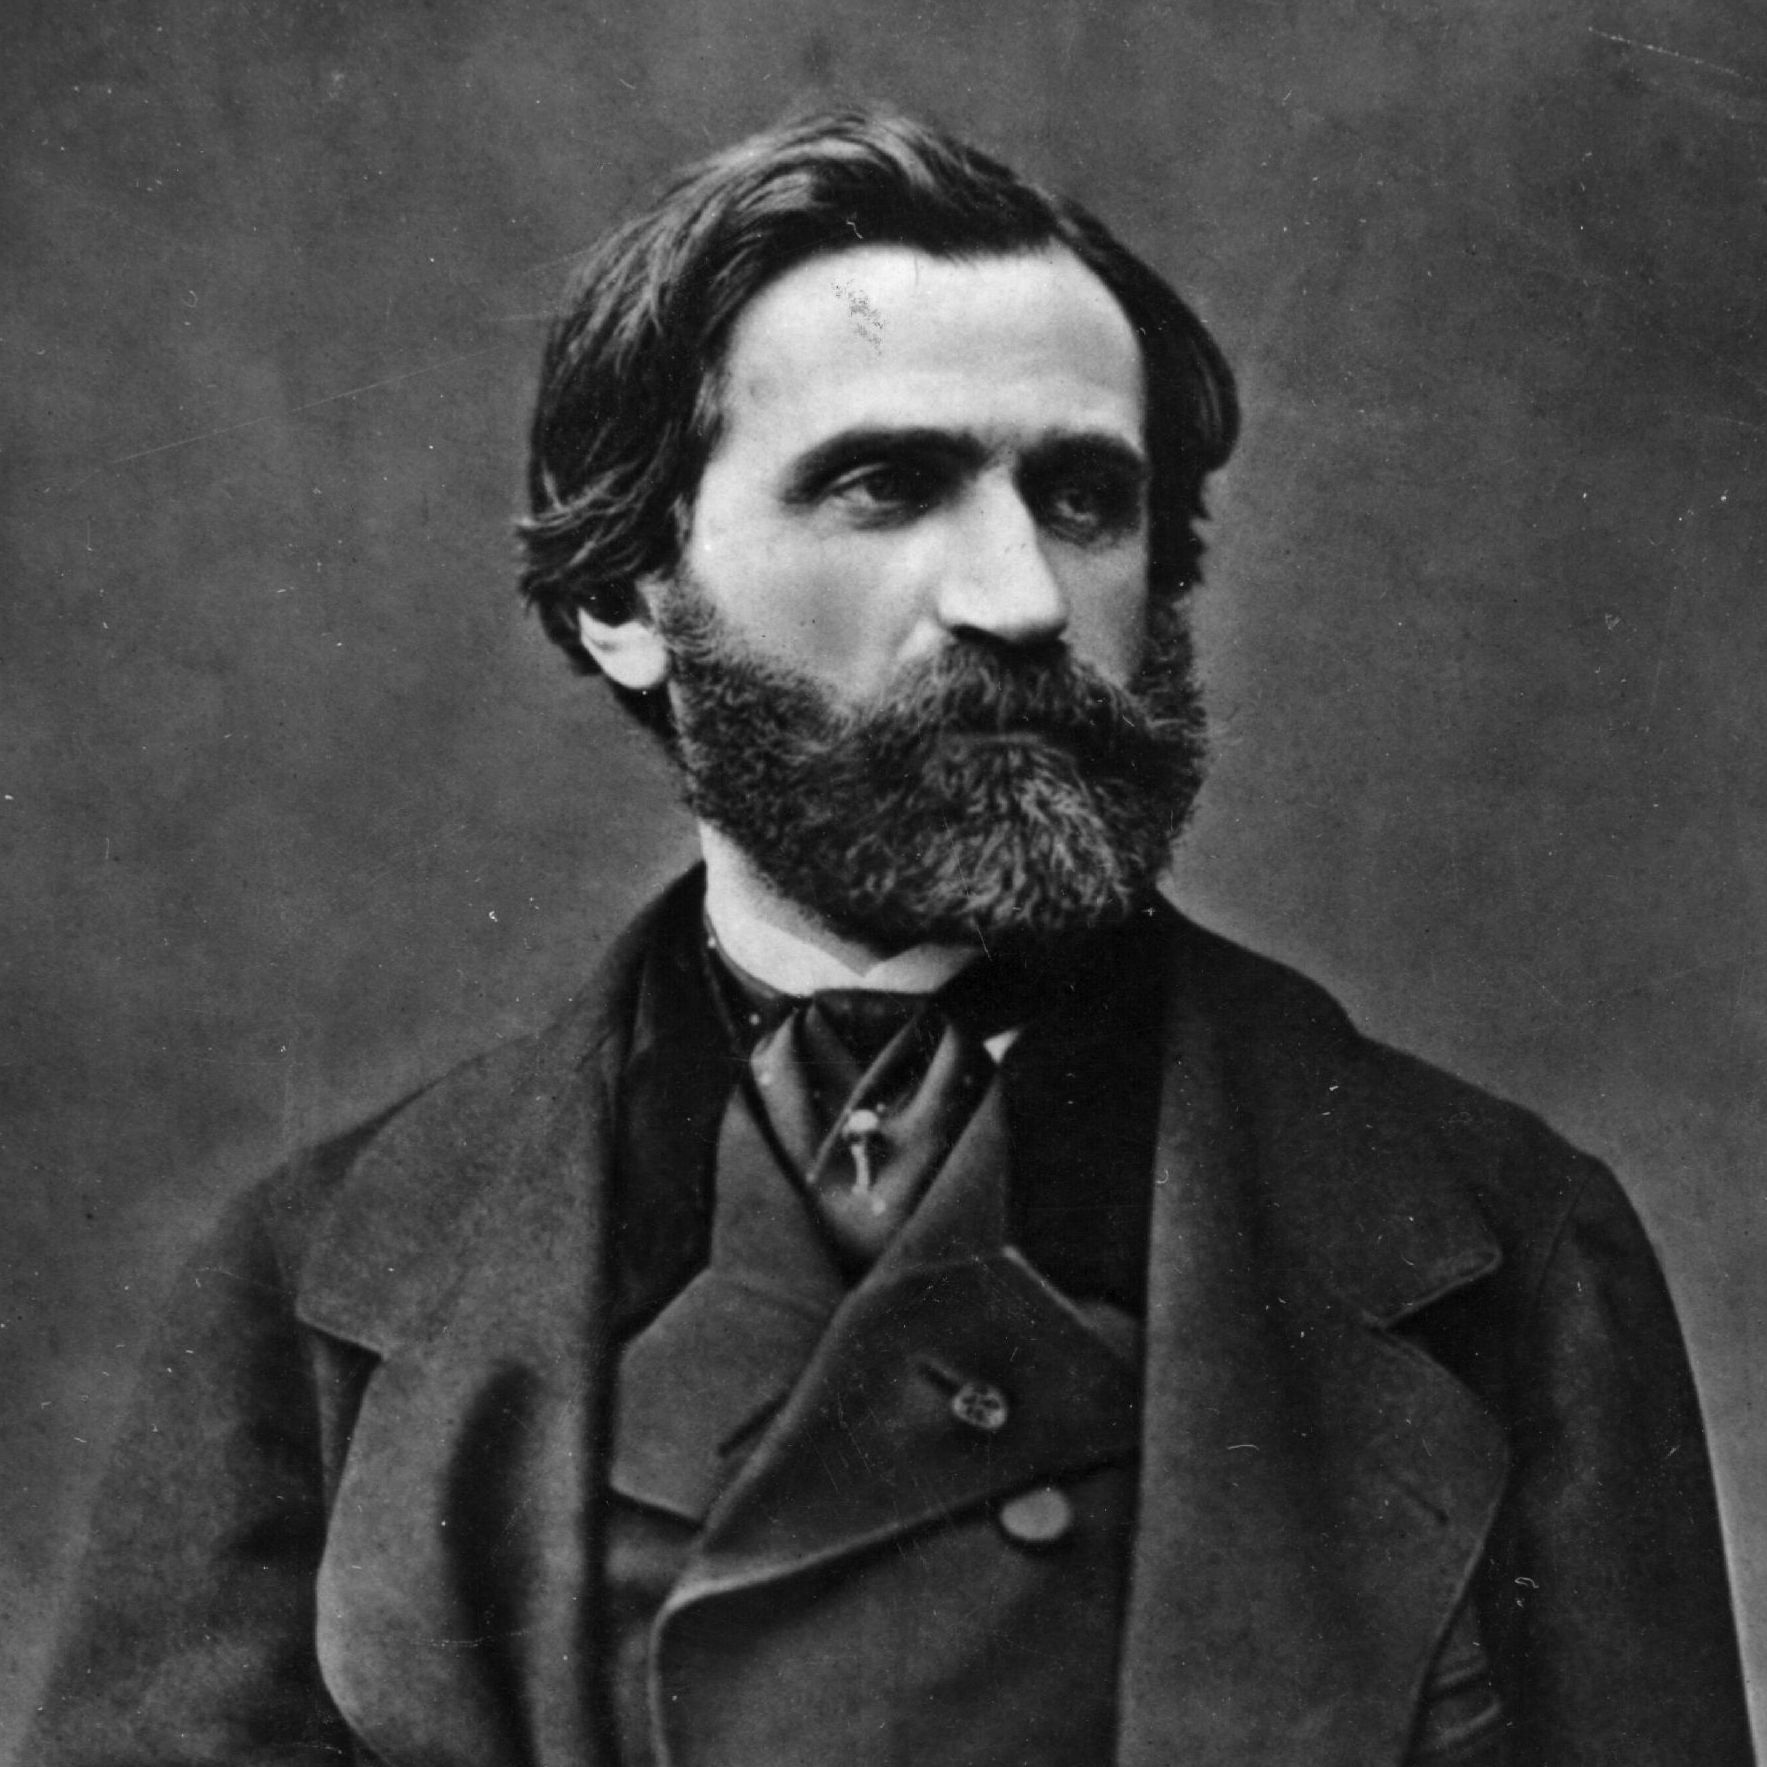 Giuseppe Verdi - Compositions, Operas & La Traviata